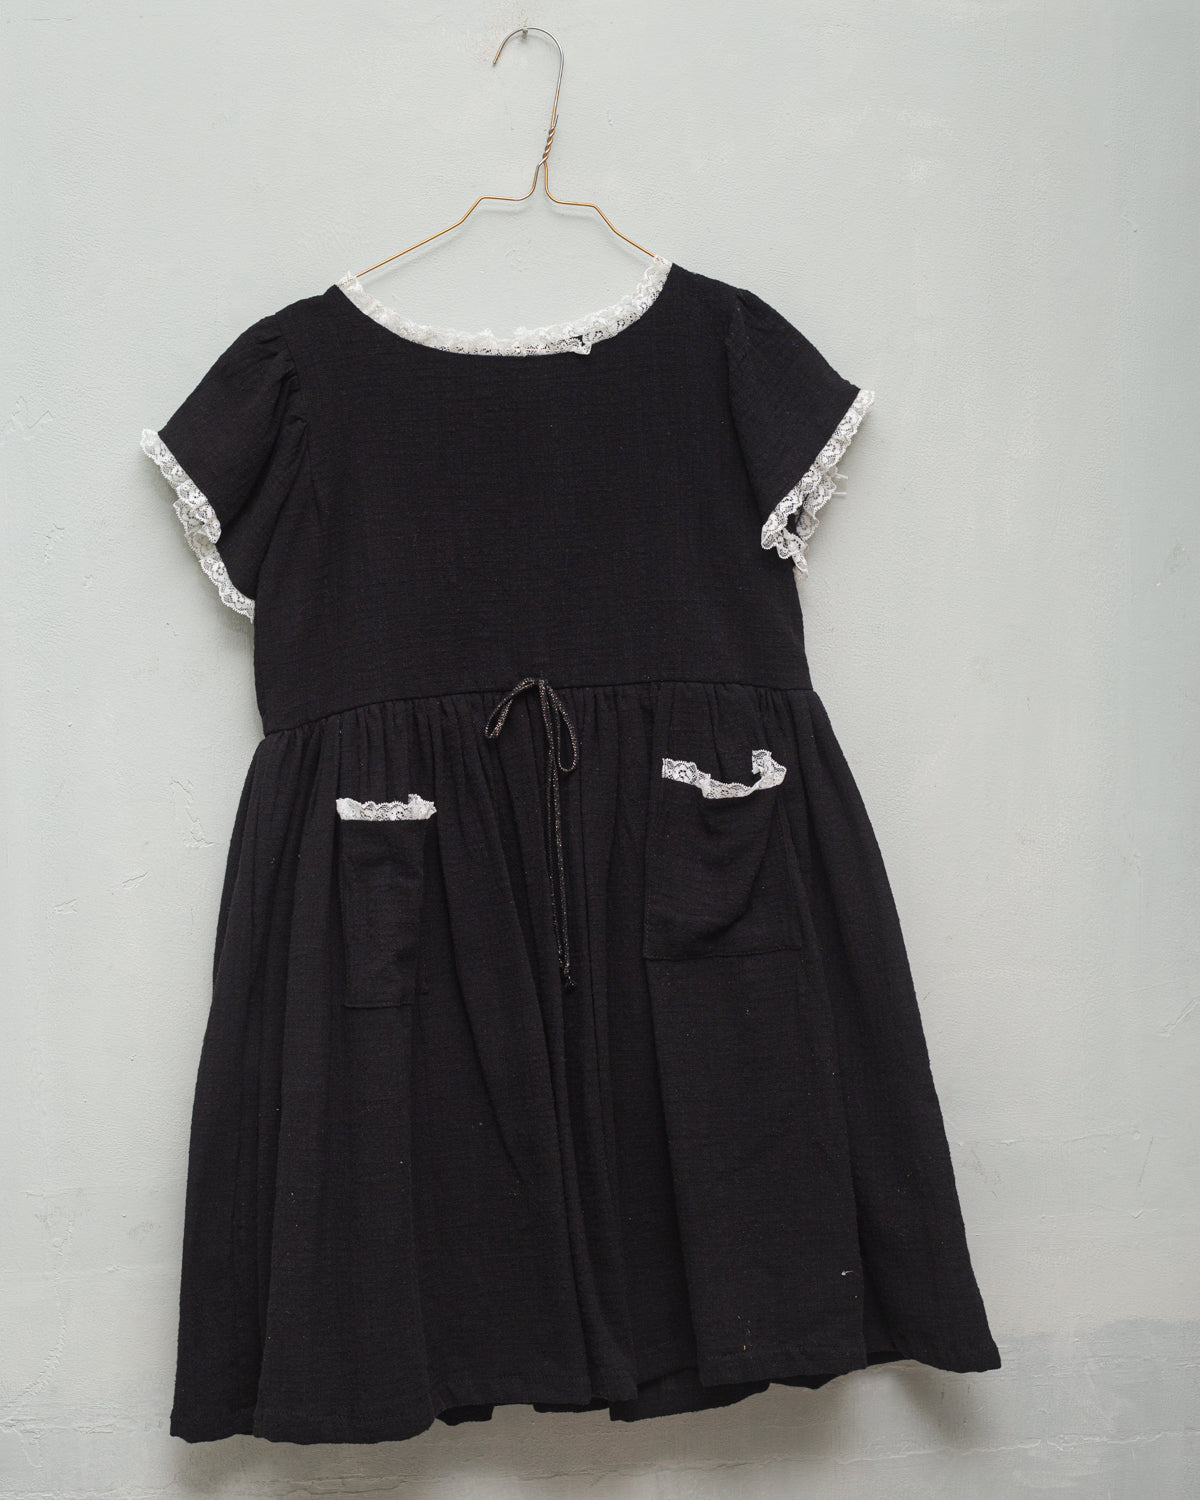 Casiopea Black Dresses Cosmosophie 